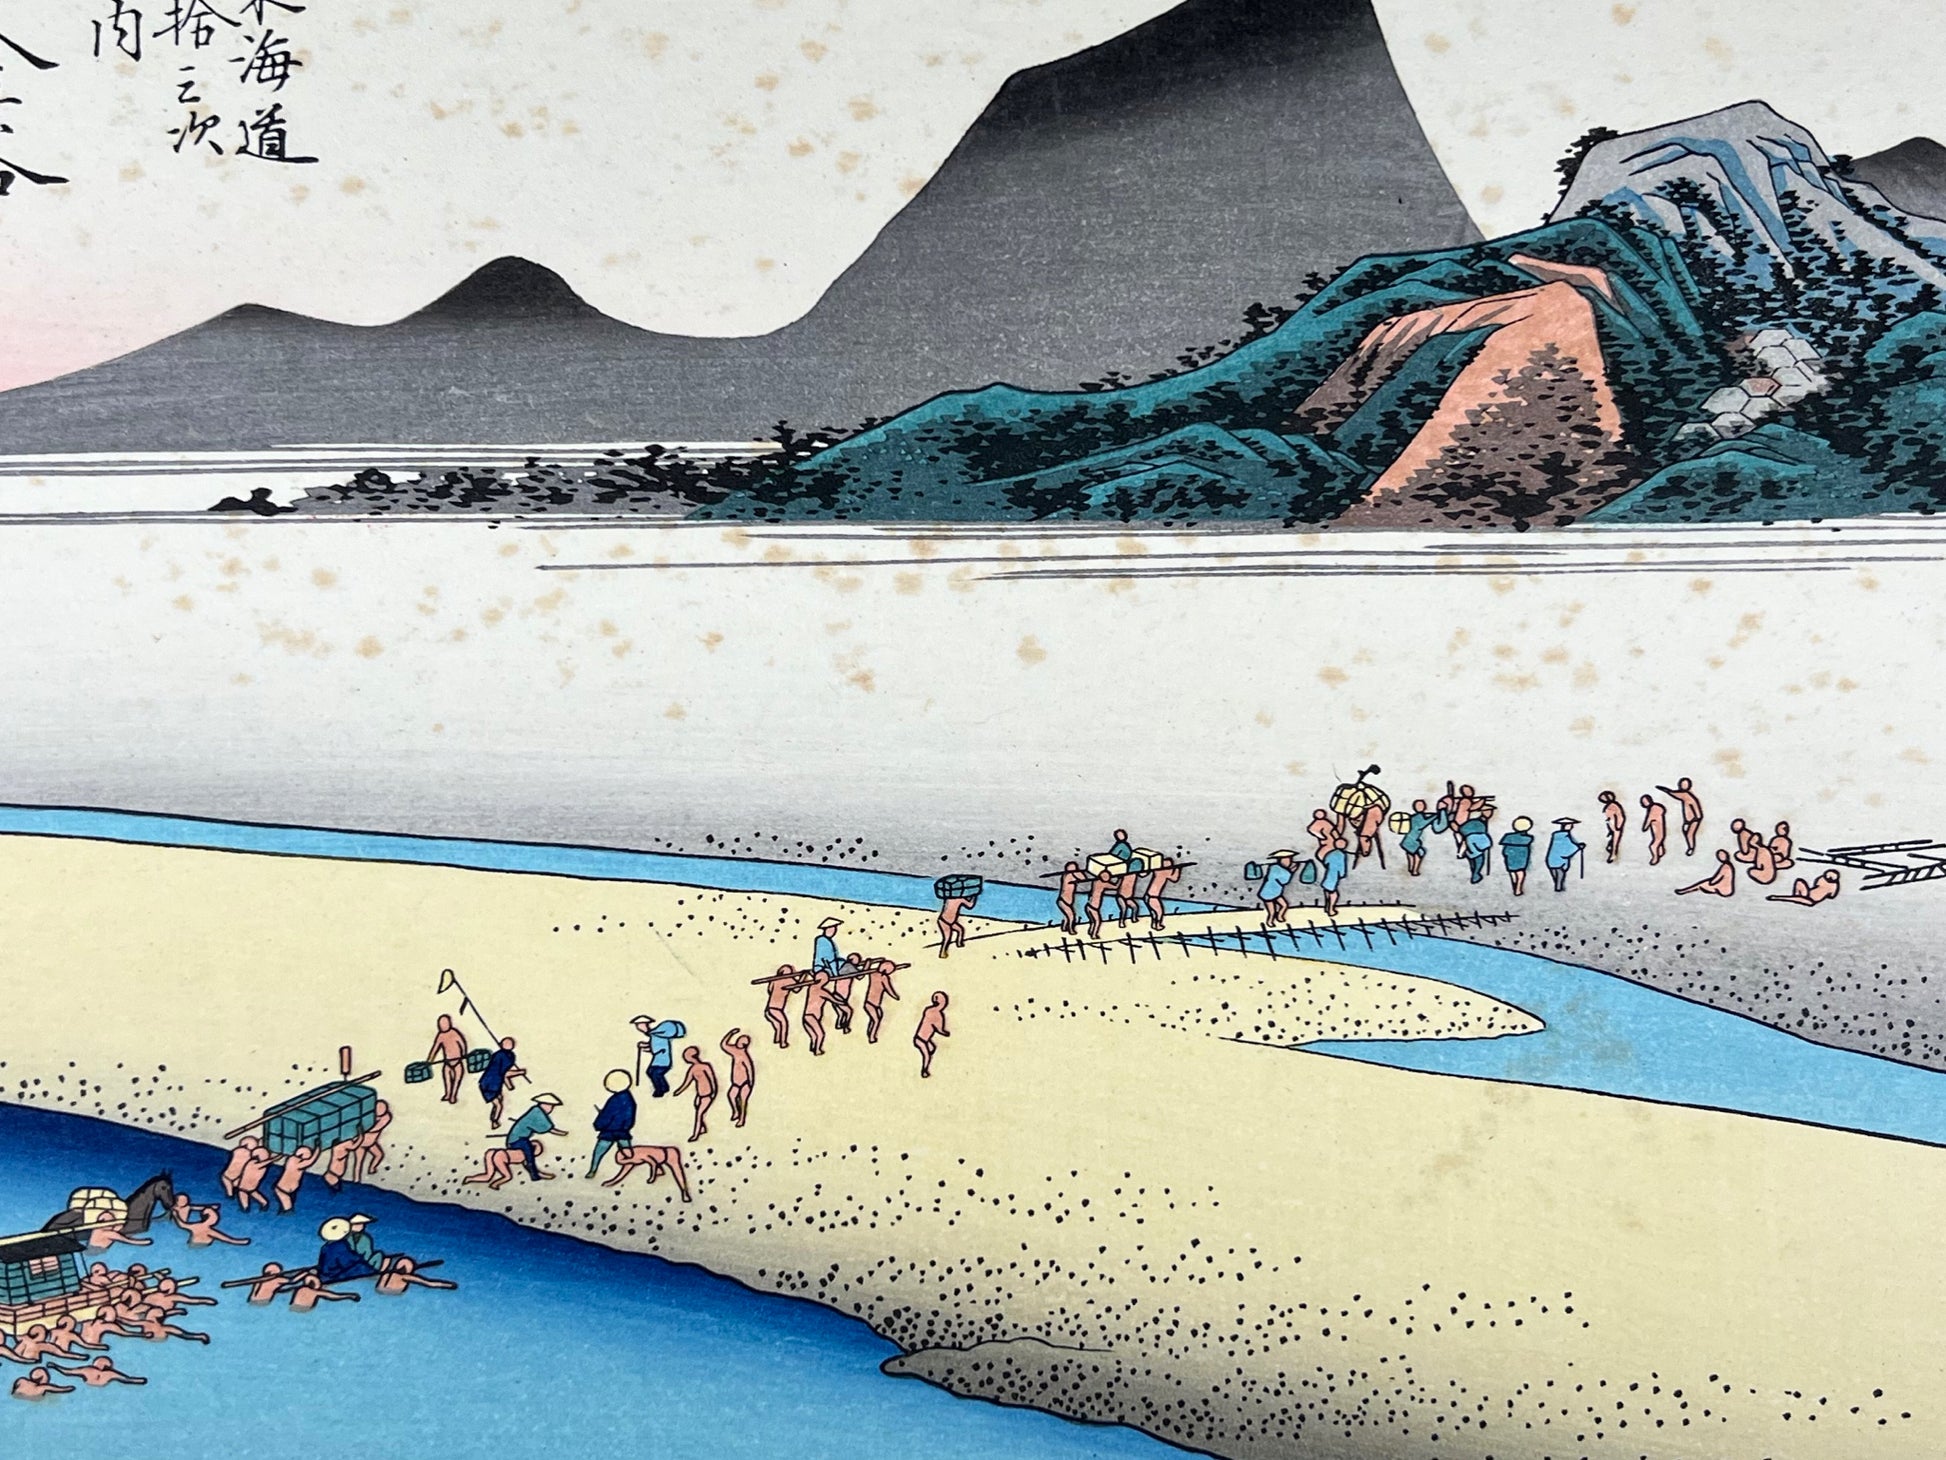 estampe japonaise de Hiroshige, des voyageurs traversent la rivière à gué à l'aide de porteurs, détail de la rive